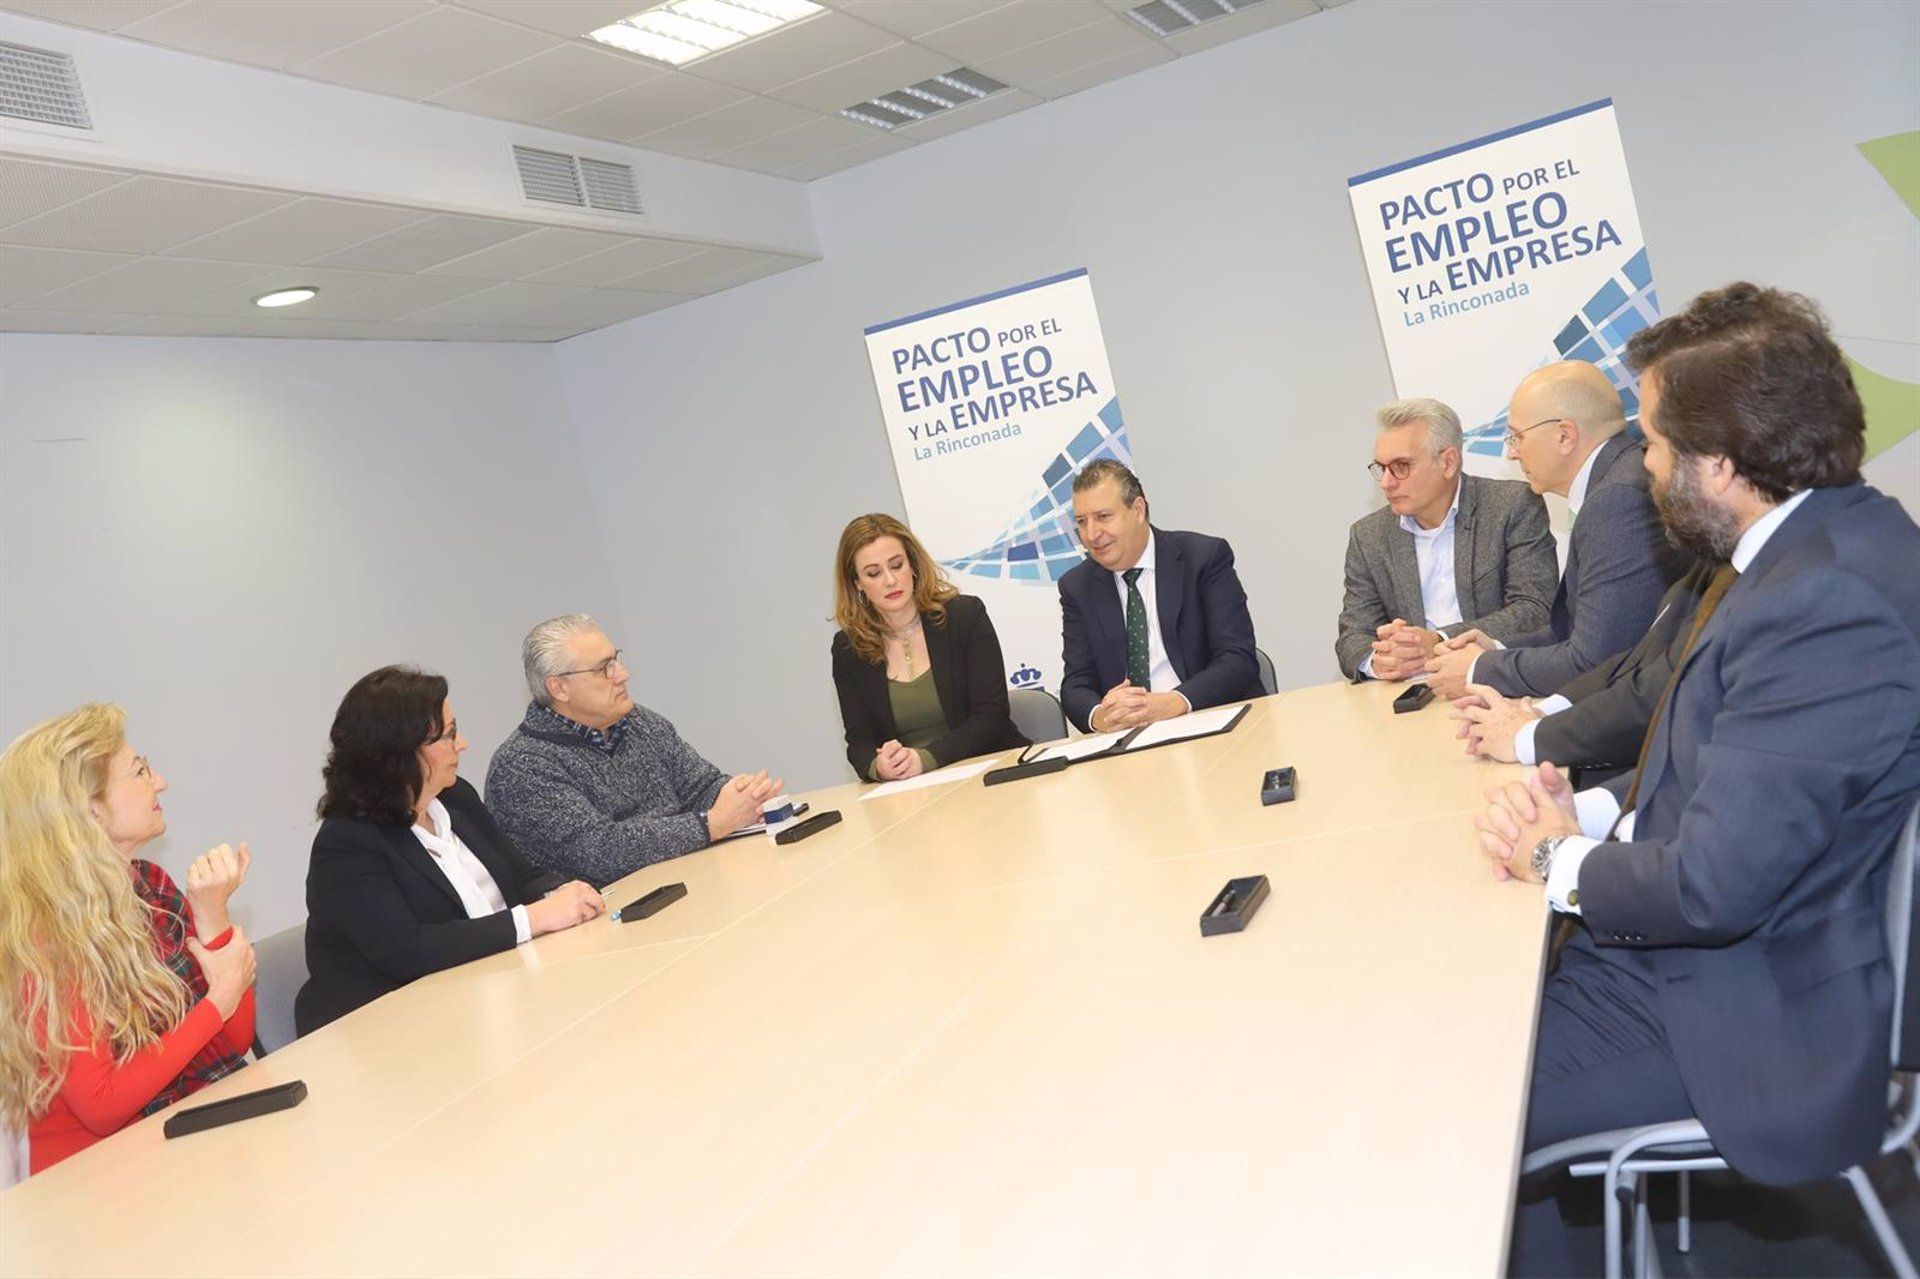 El gobierno local de La Rinconada firma con colectivos empresariales y asociaciones un 'Pacto por el Empleo y la Empresa' en el municipio.